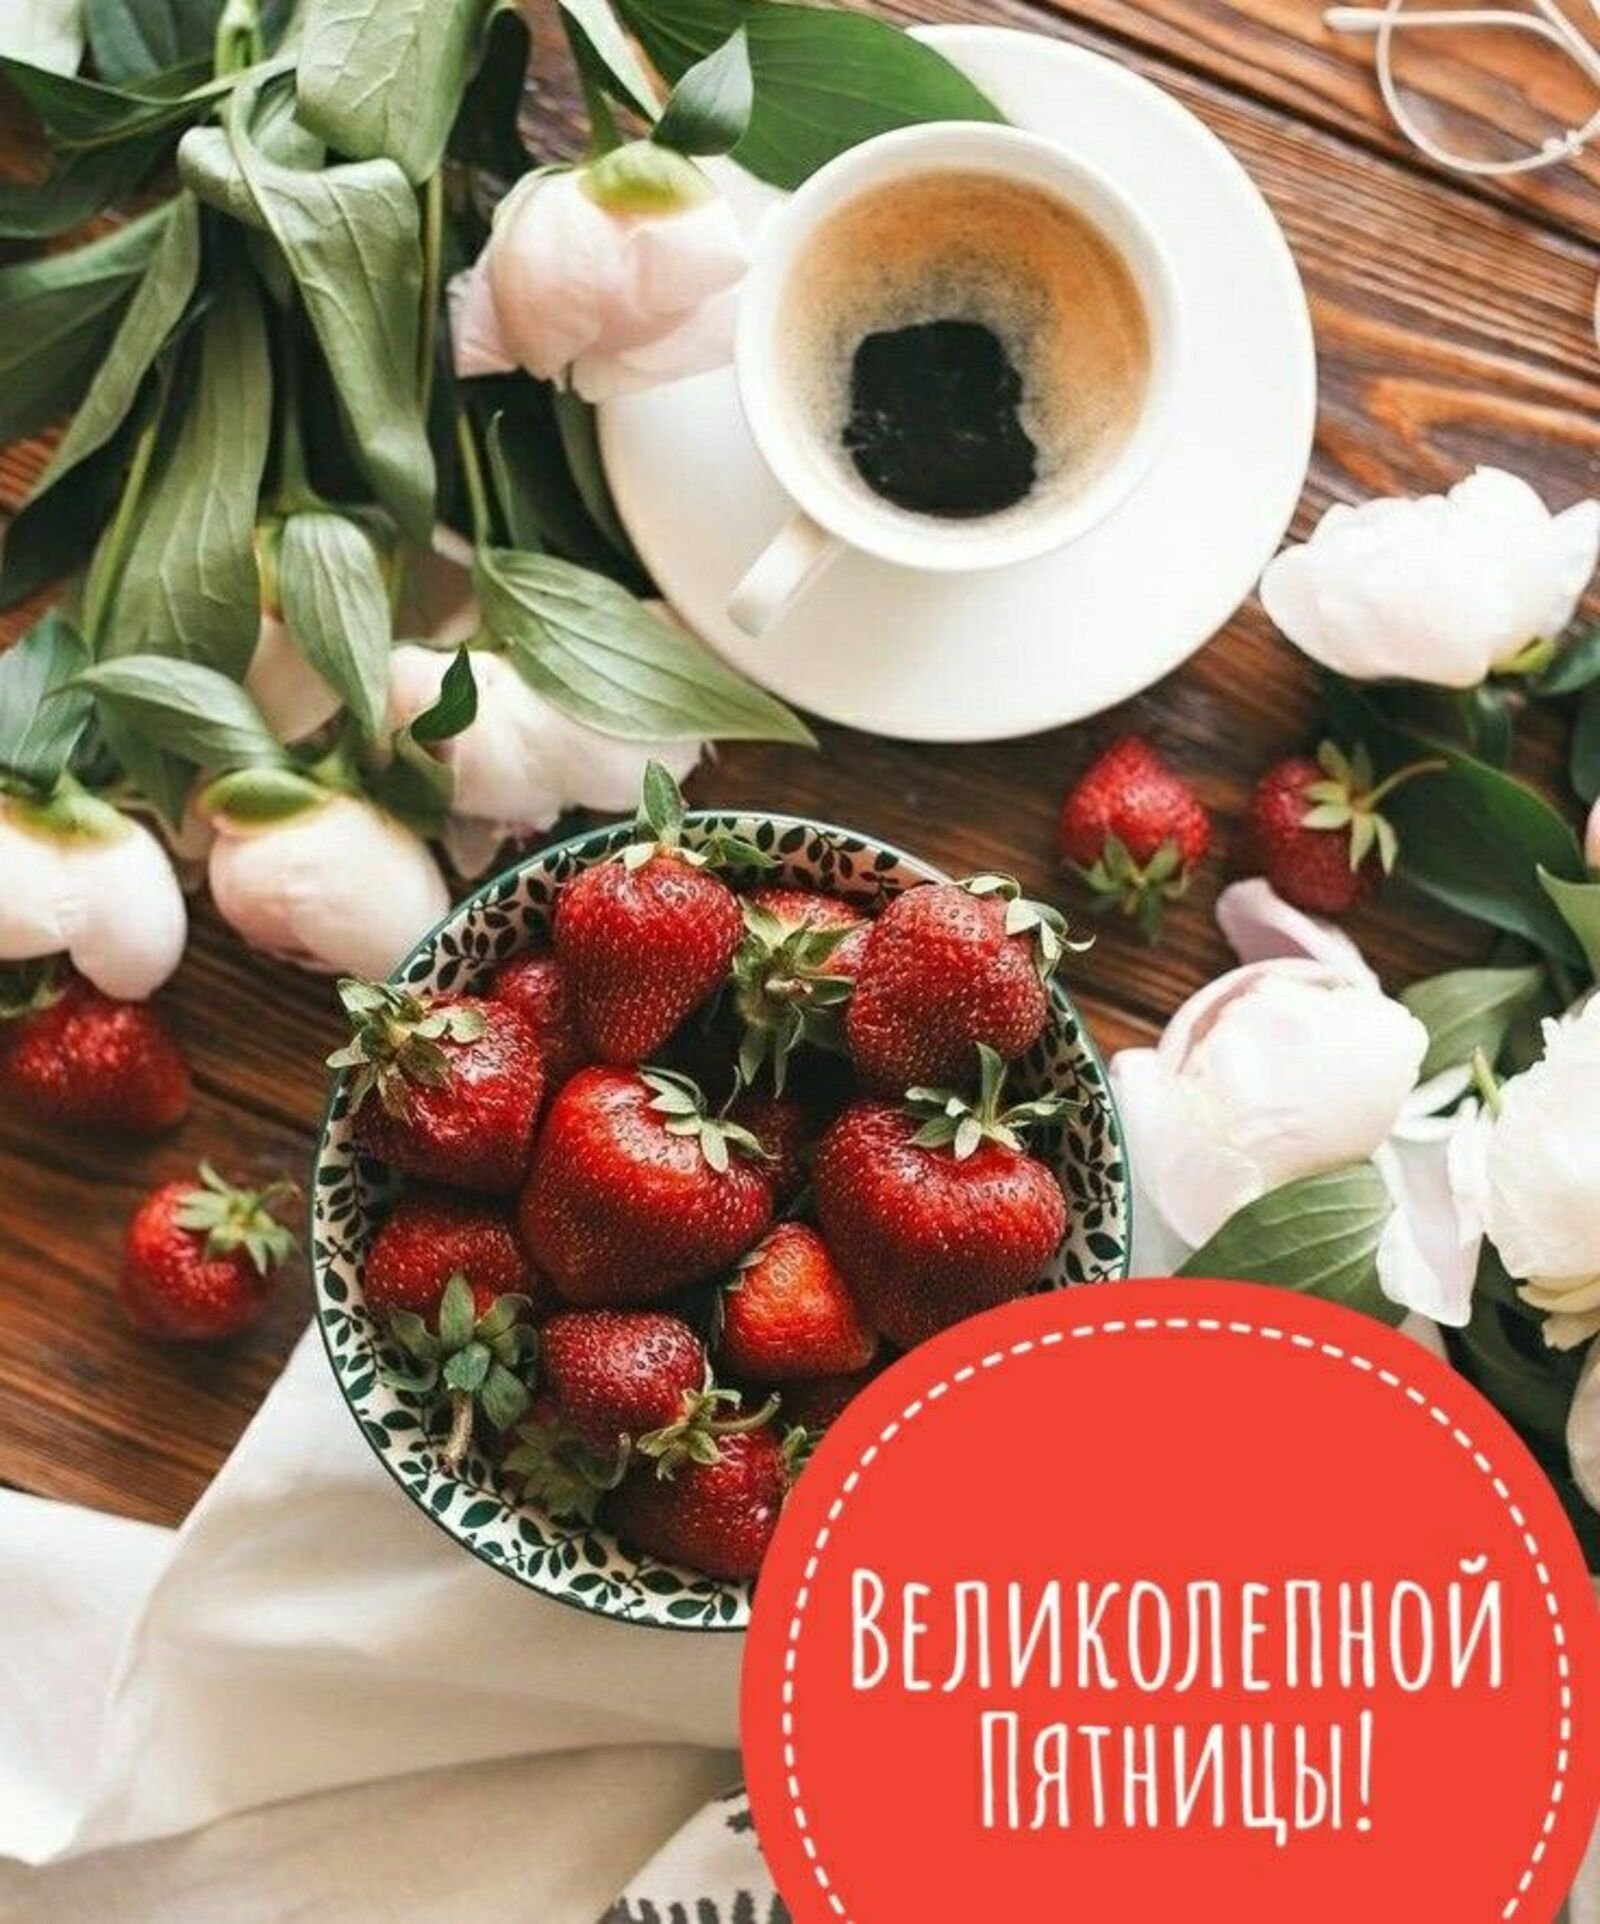 Доброеутро ру картинки пятница. Завтрак с цветами. Красивый завтрак. Доброе утро пятницы. Чашечка кофе и фрукты.